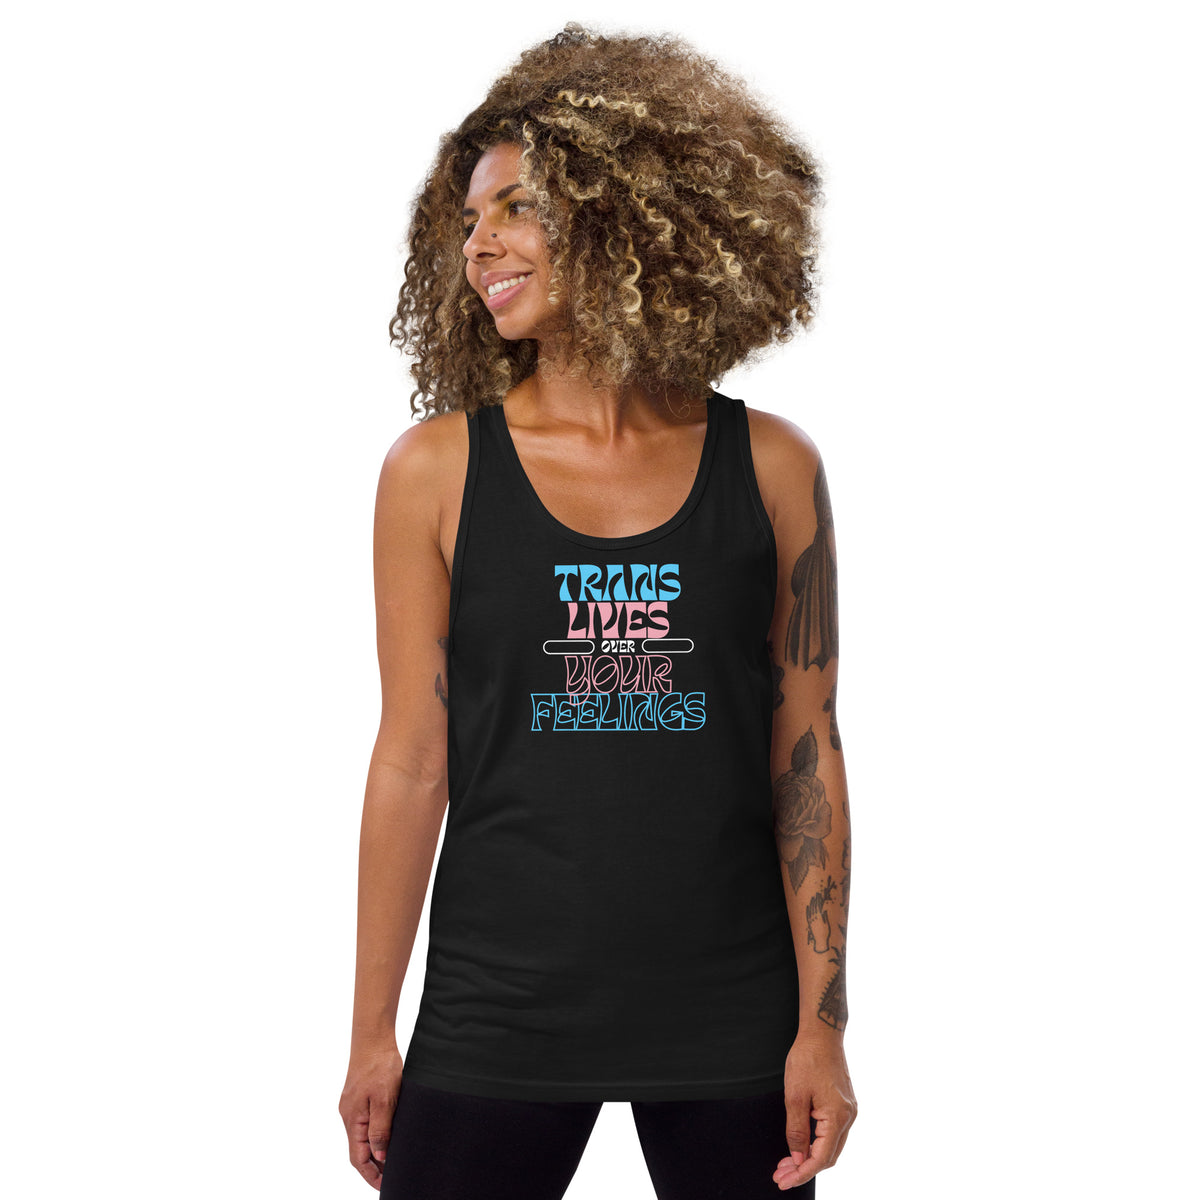 T-shirt LIBÉRÉ DÉLIVRÉ – Trans Shirt